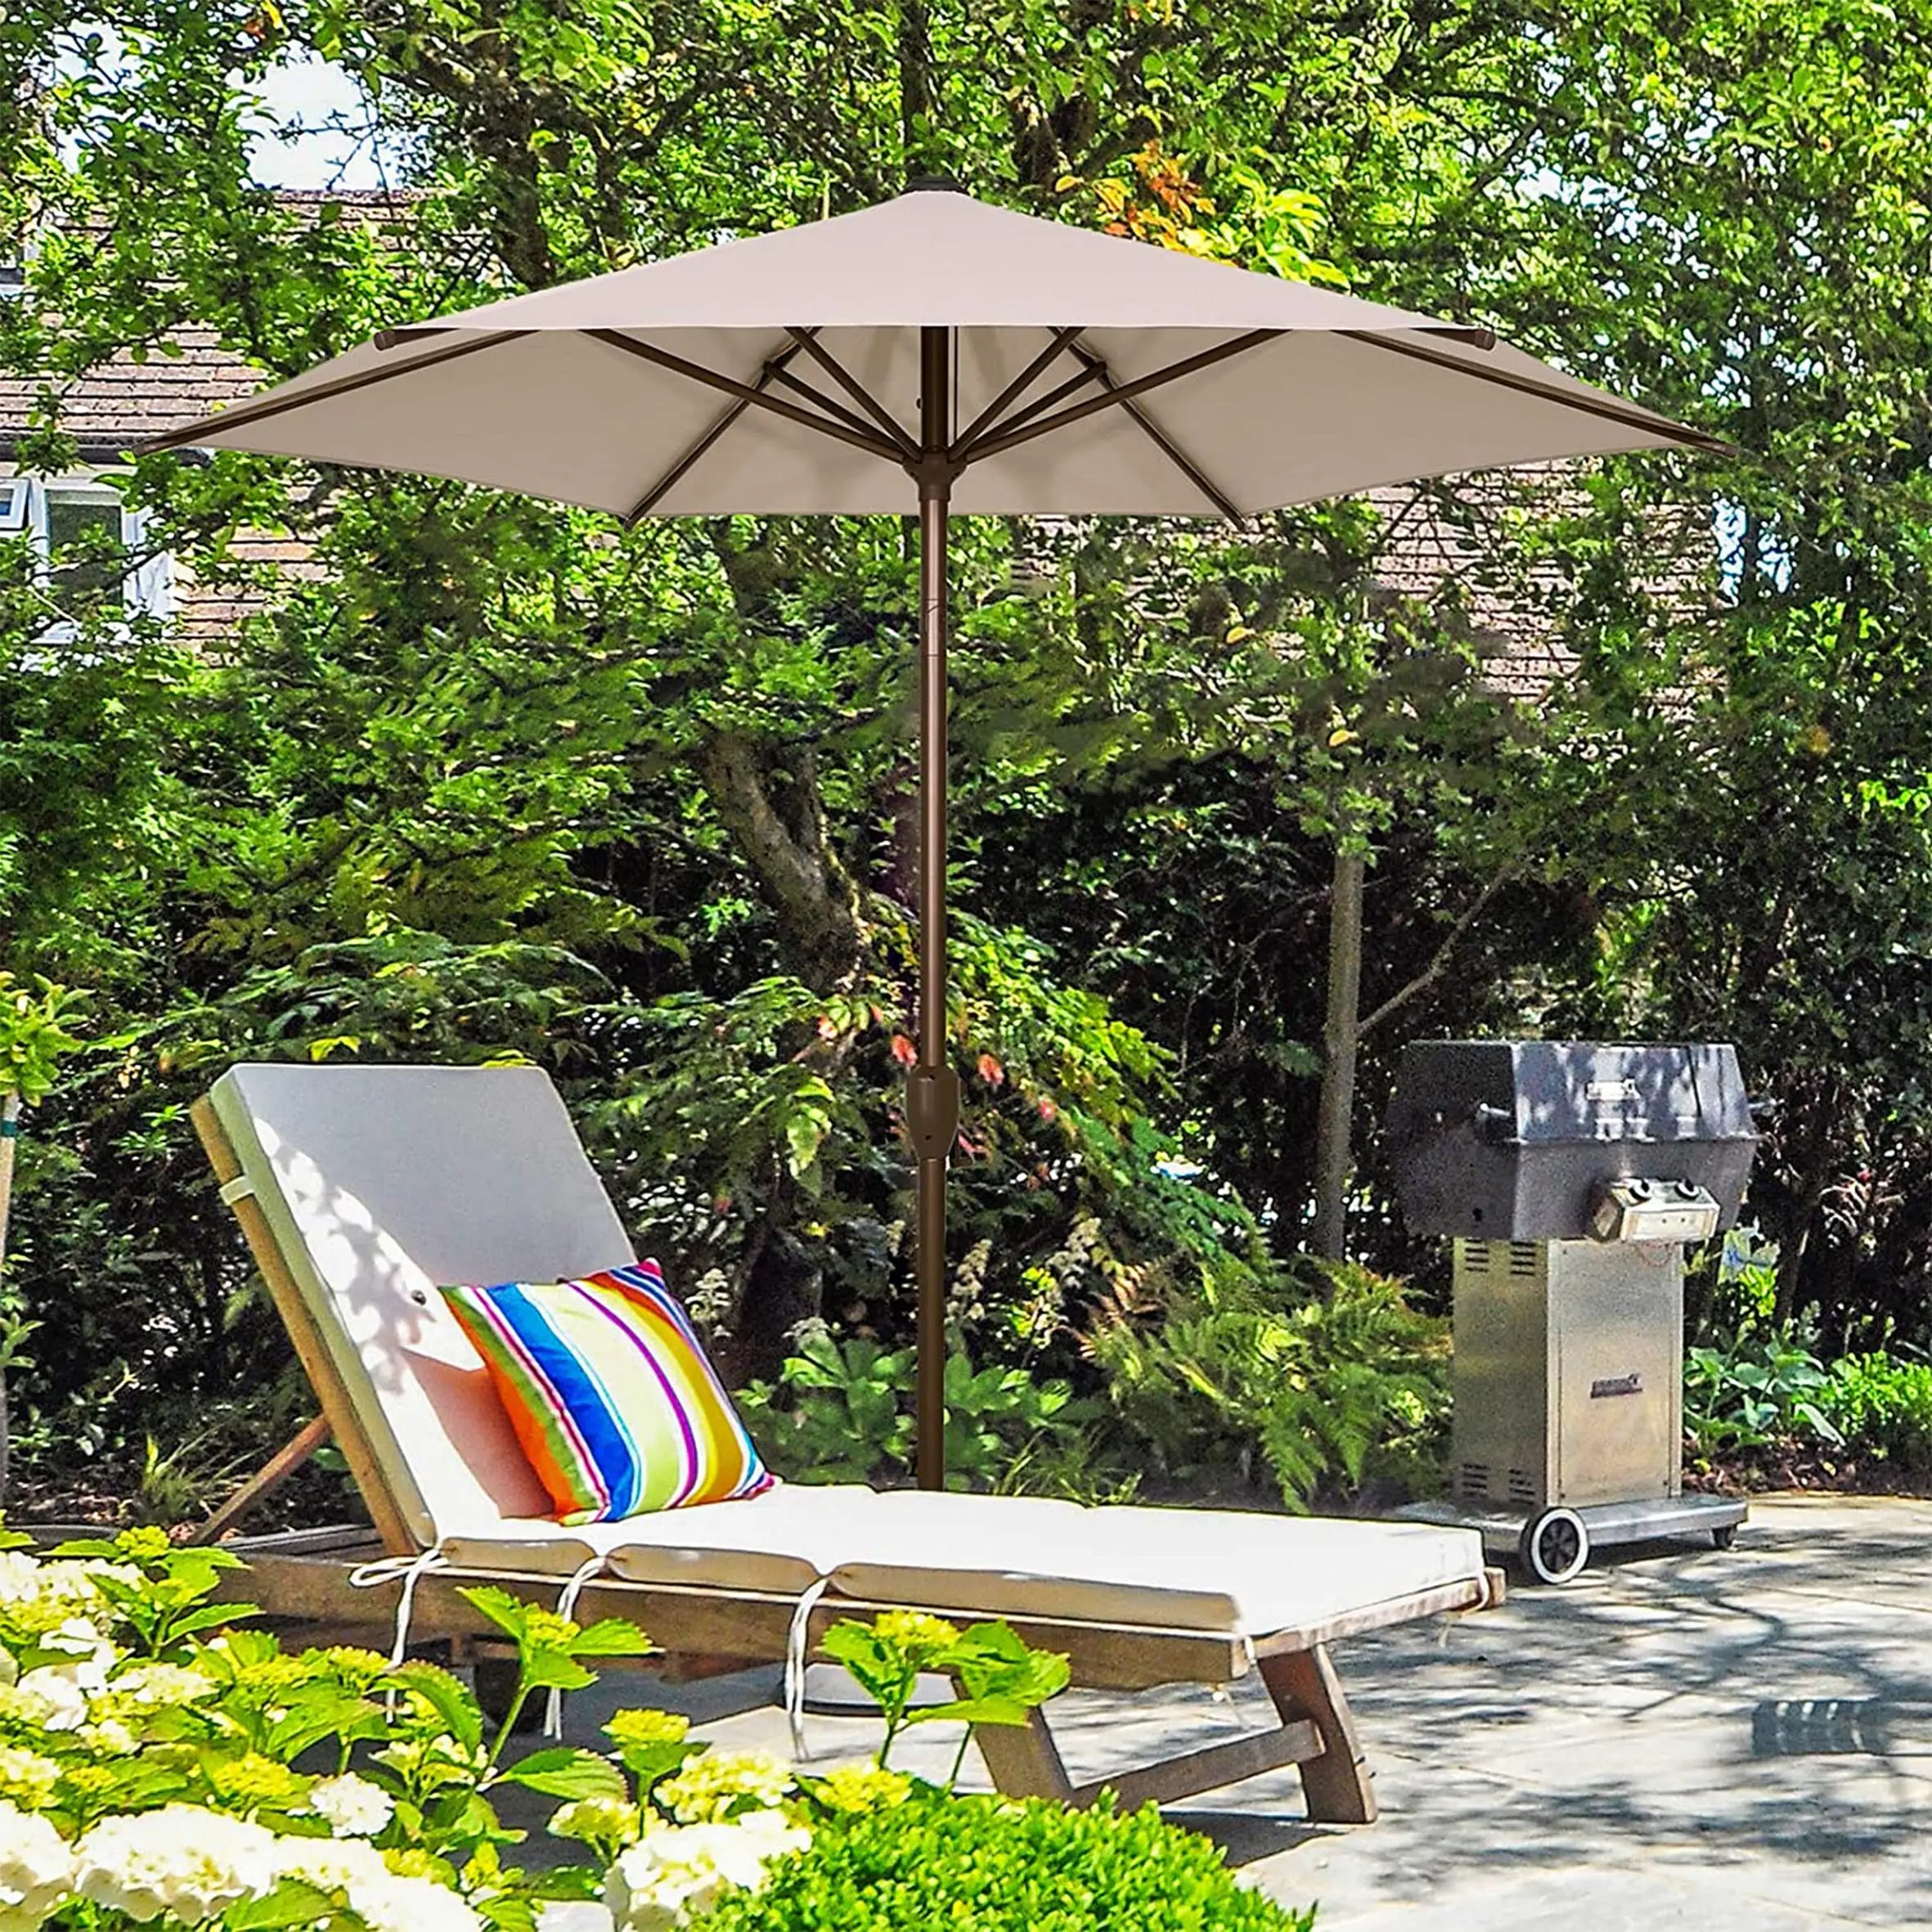 Cafe restaurant açık veranda mobilya tente için plaj şemsiyesi büyük şemsiye bahçe rüzgar geçirmez güneşlik